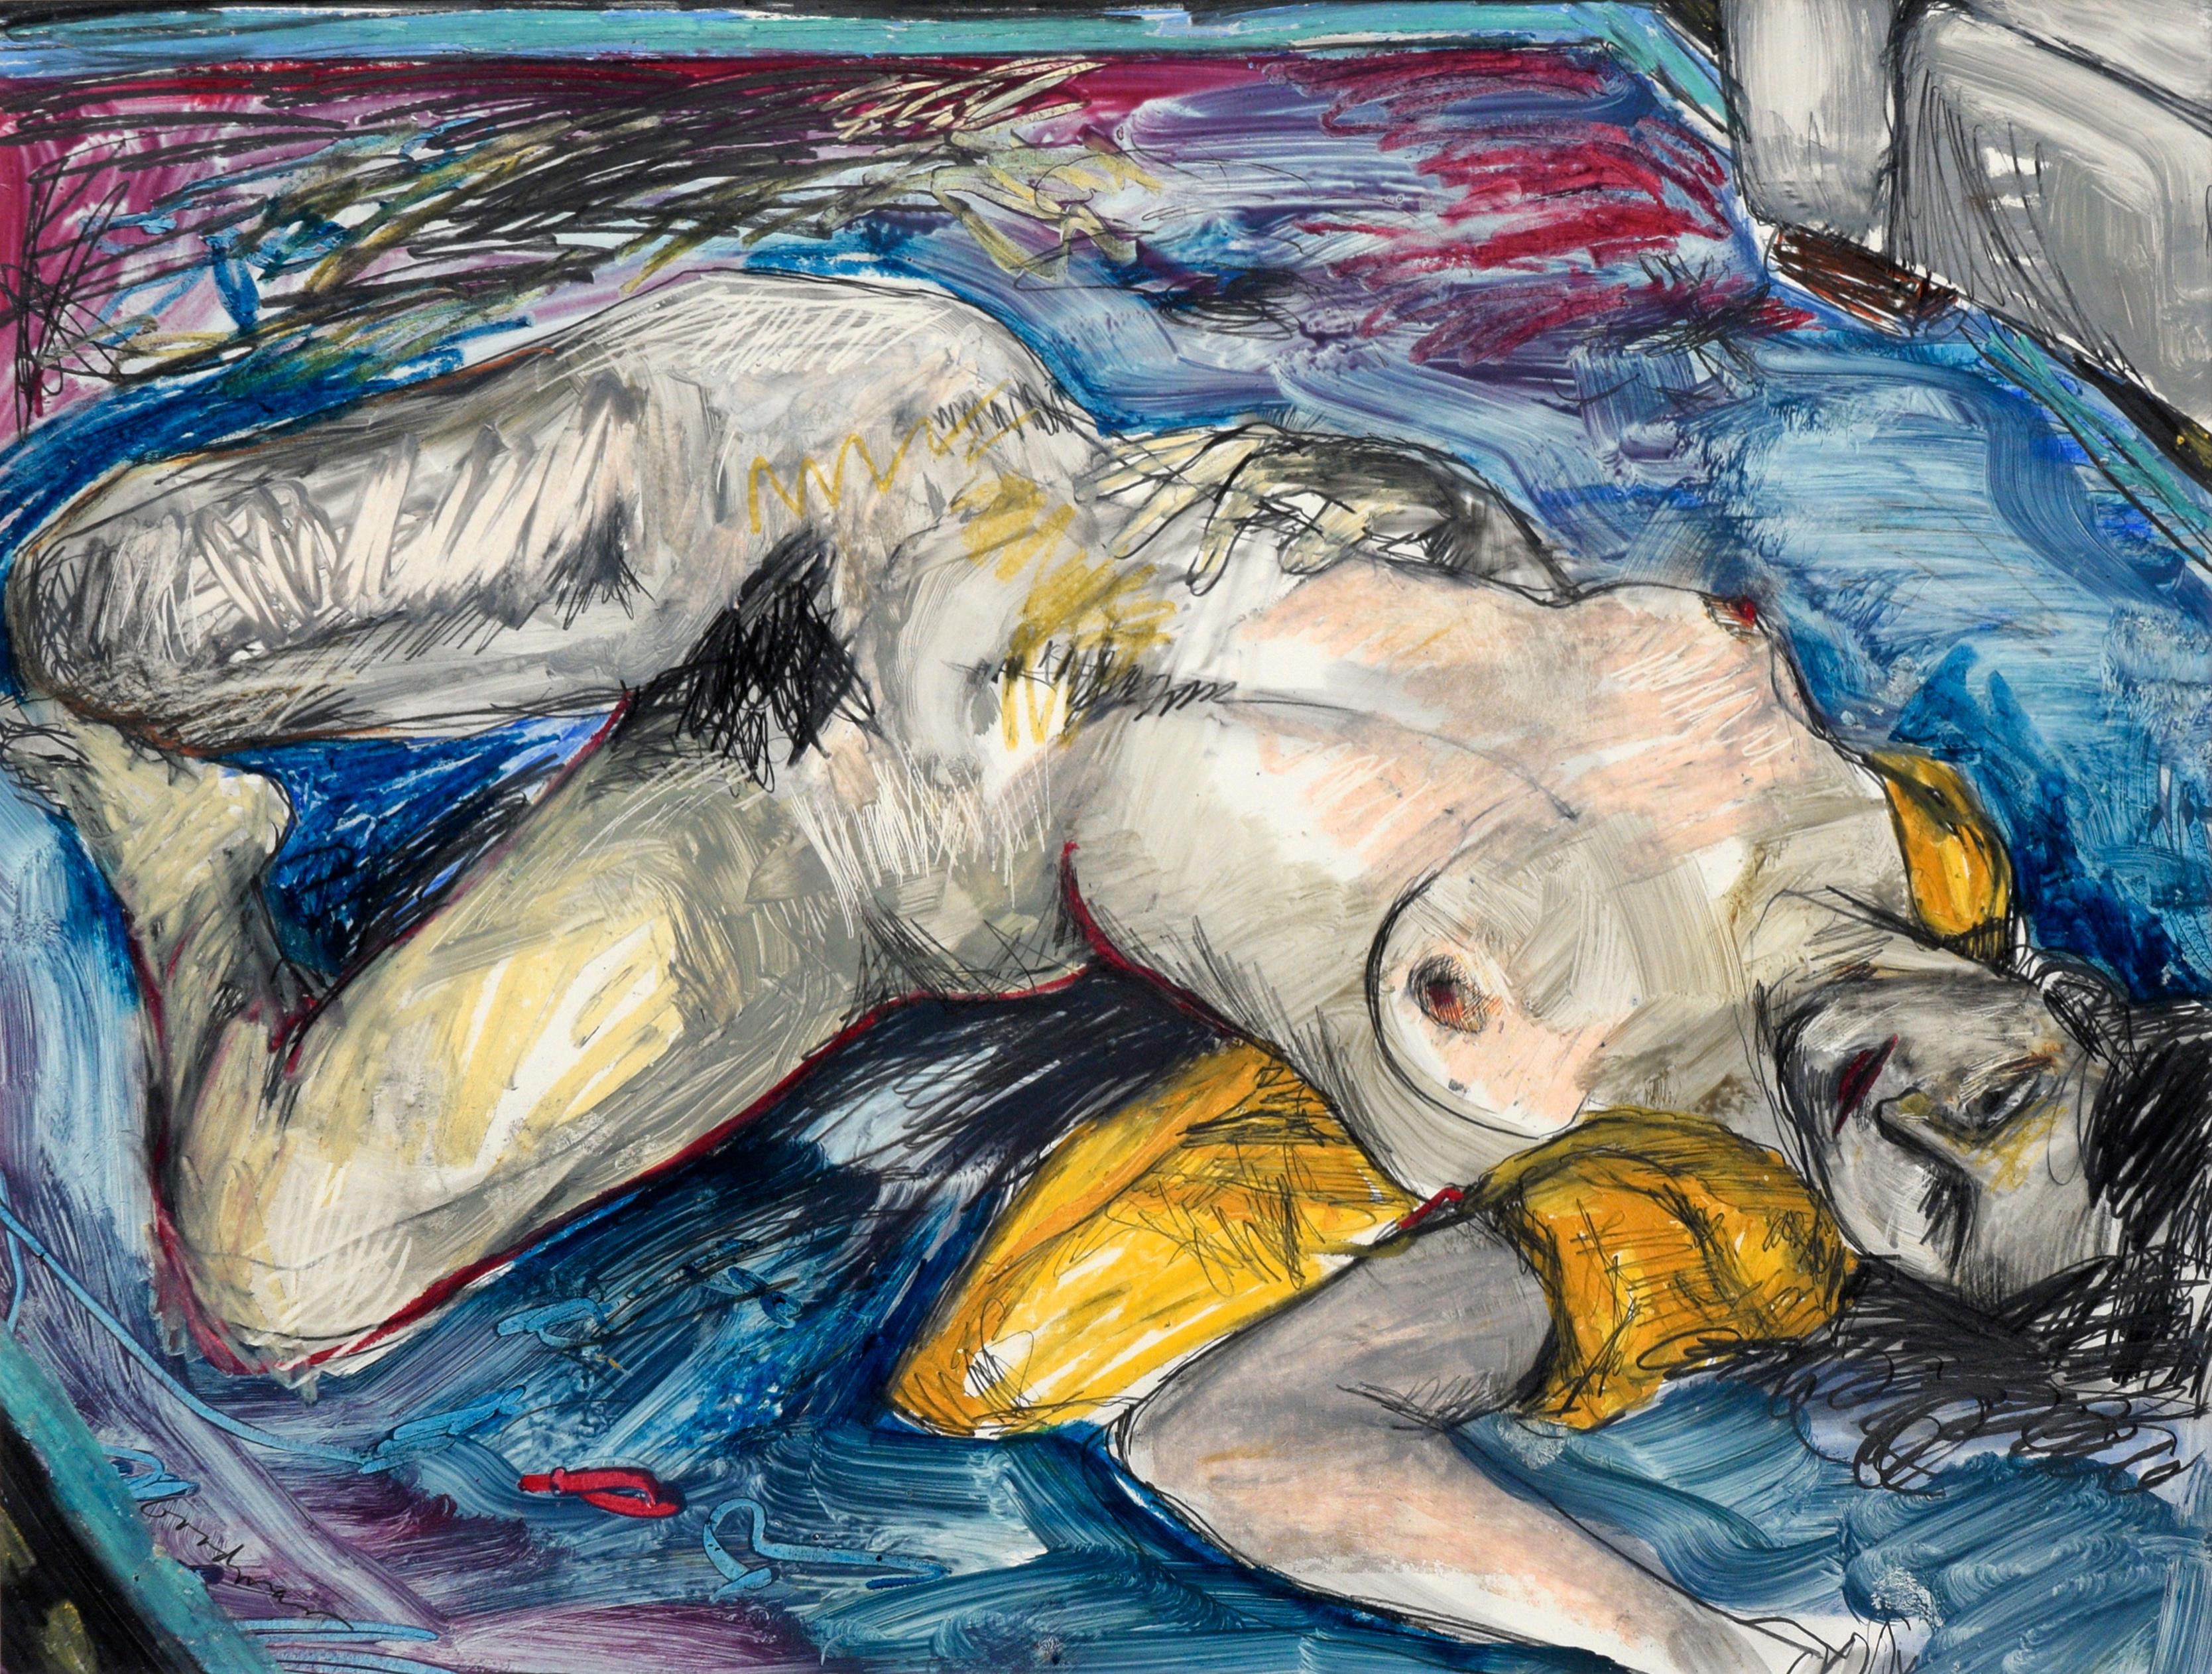 Rechteckige expressionistische weibliche Aktfigur mit gelbem, blauem und Magentafarbenem Akt – Painting von Linda Goodman